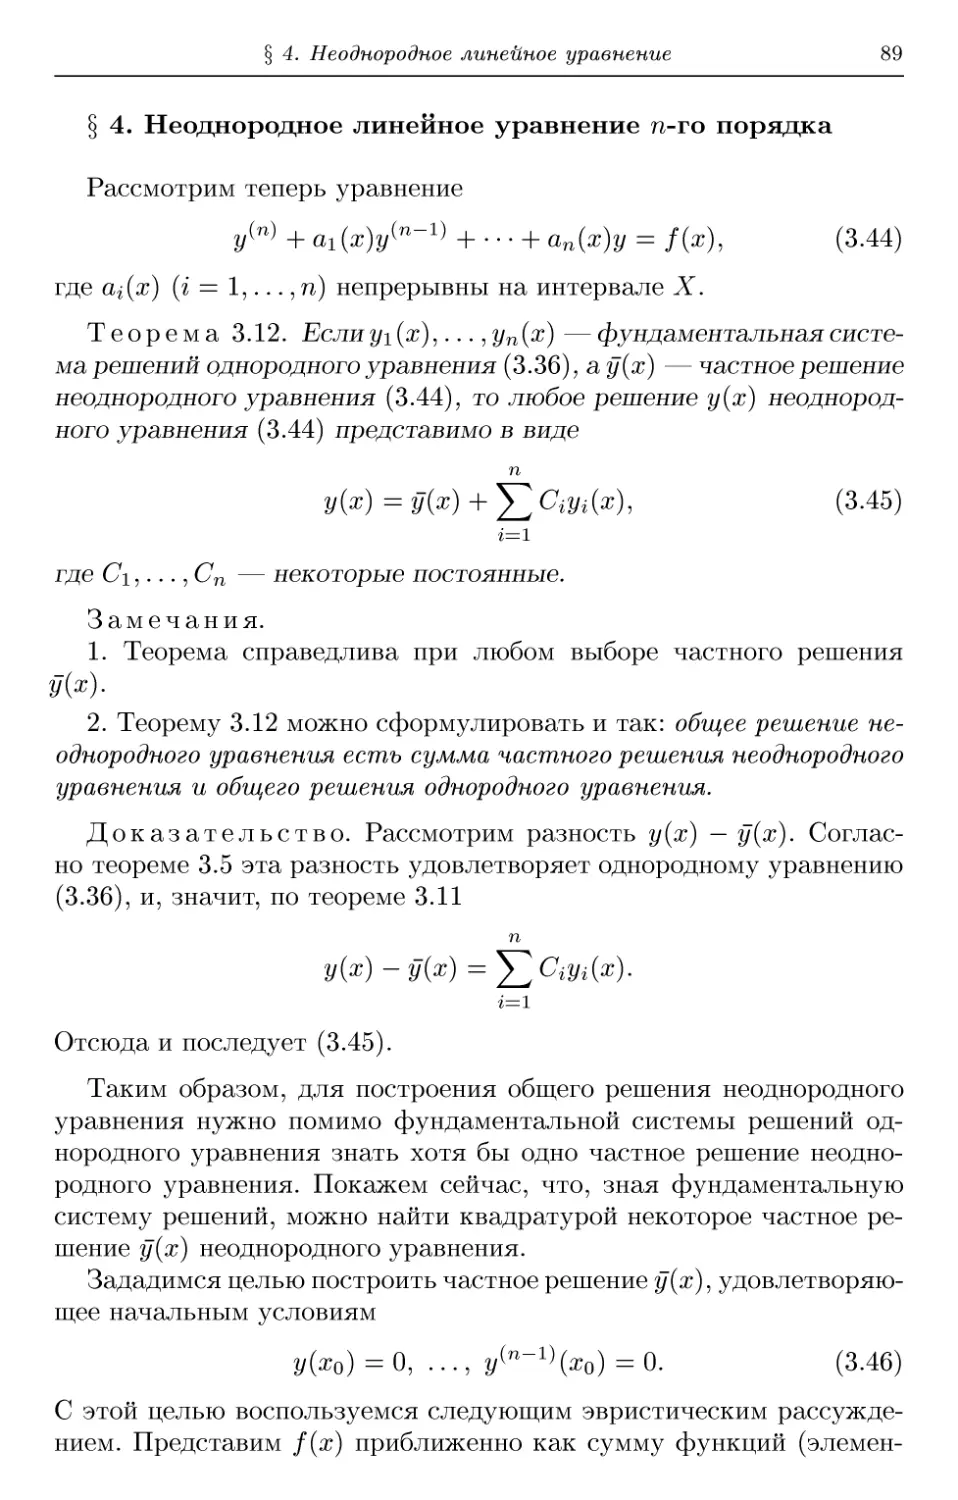 § 4. Неоднородное линейное уравнение n-го порядка